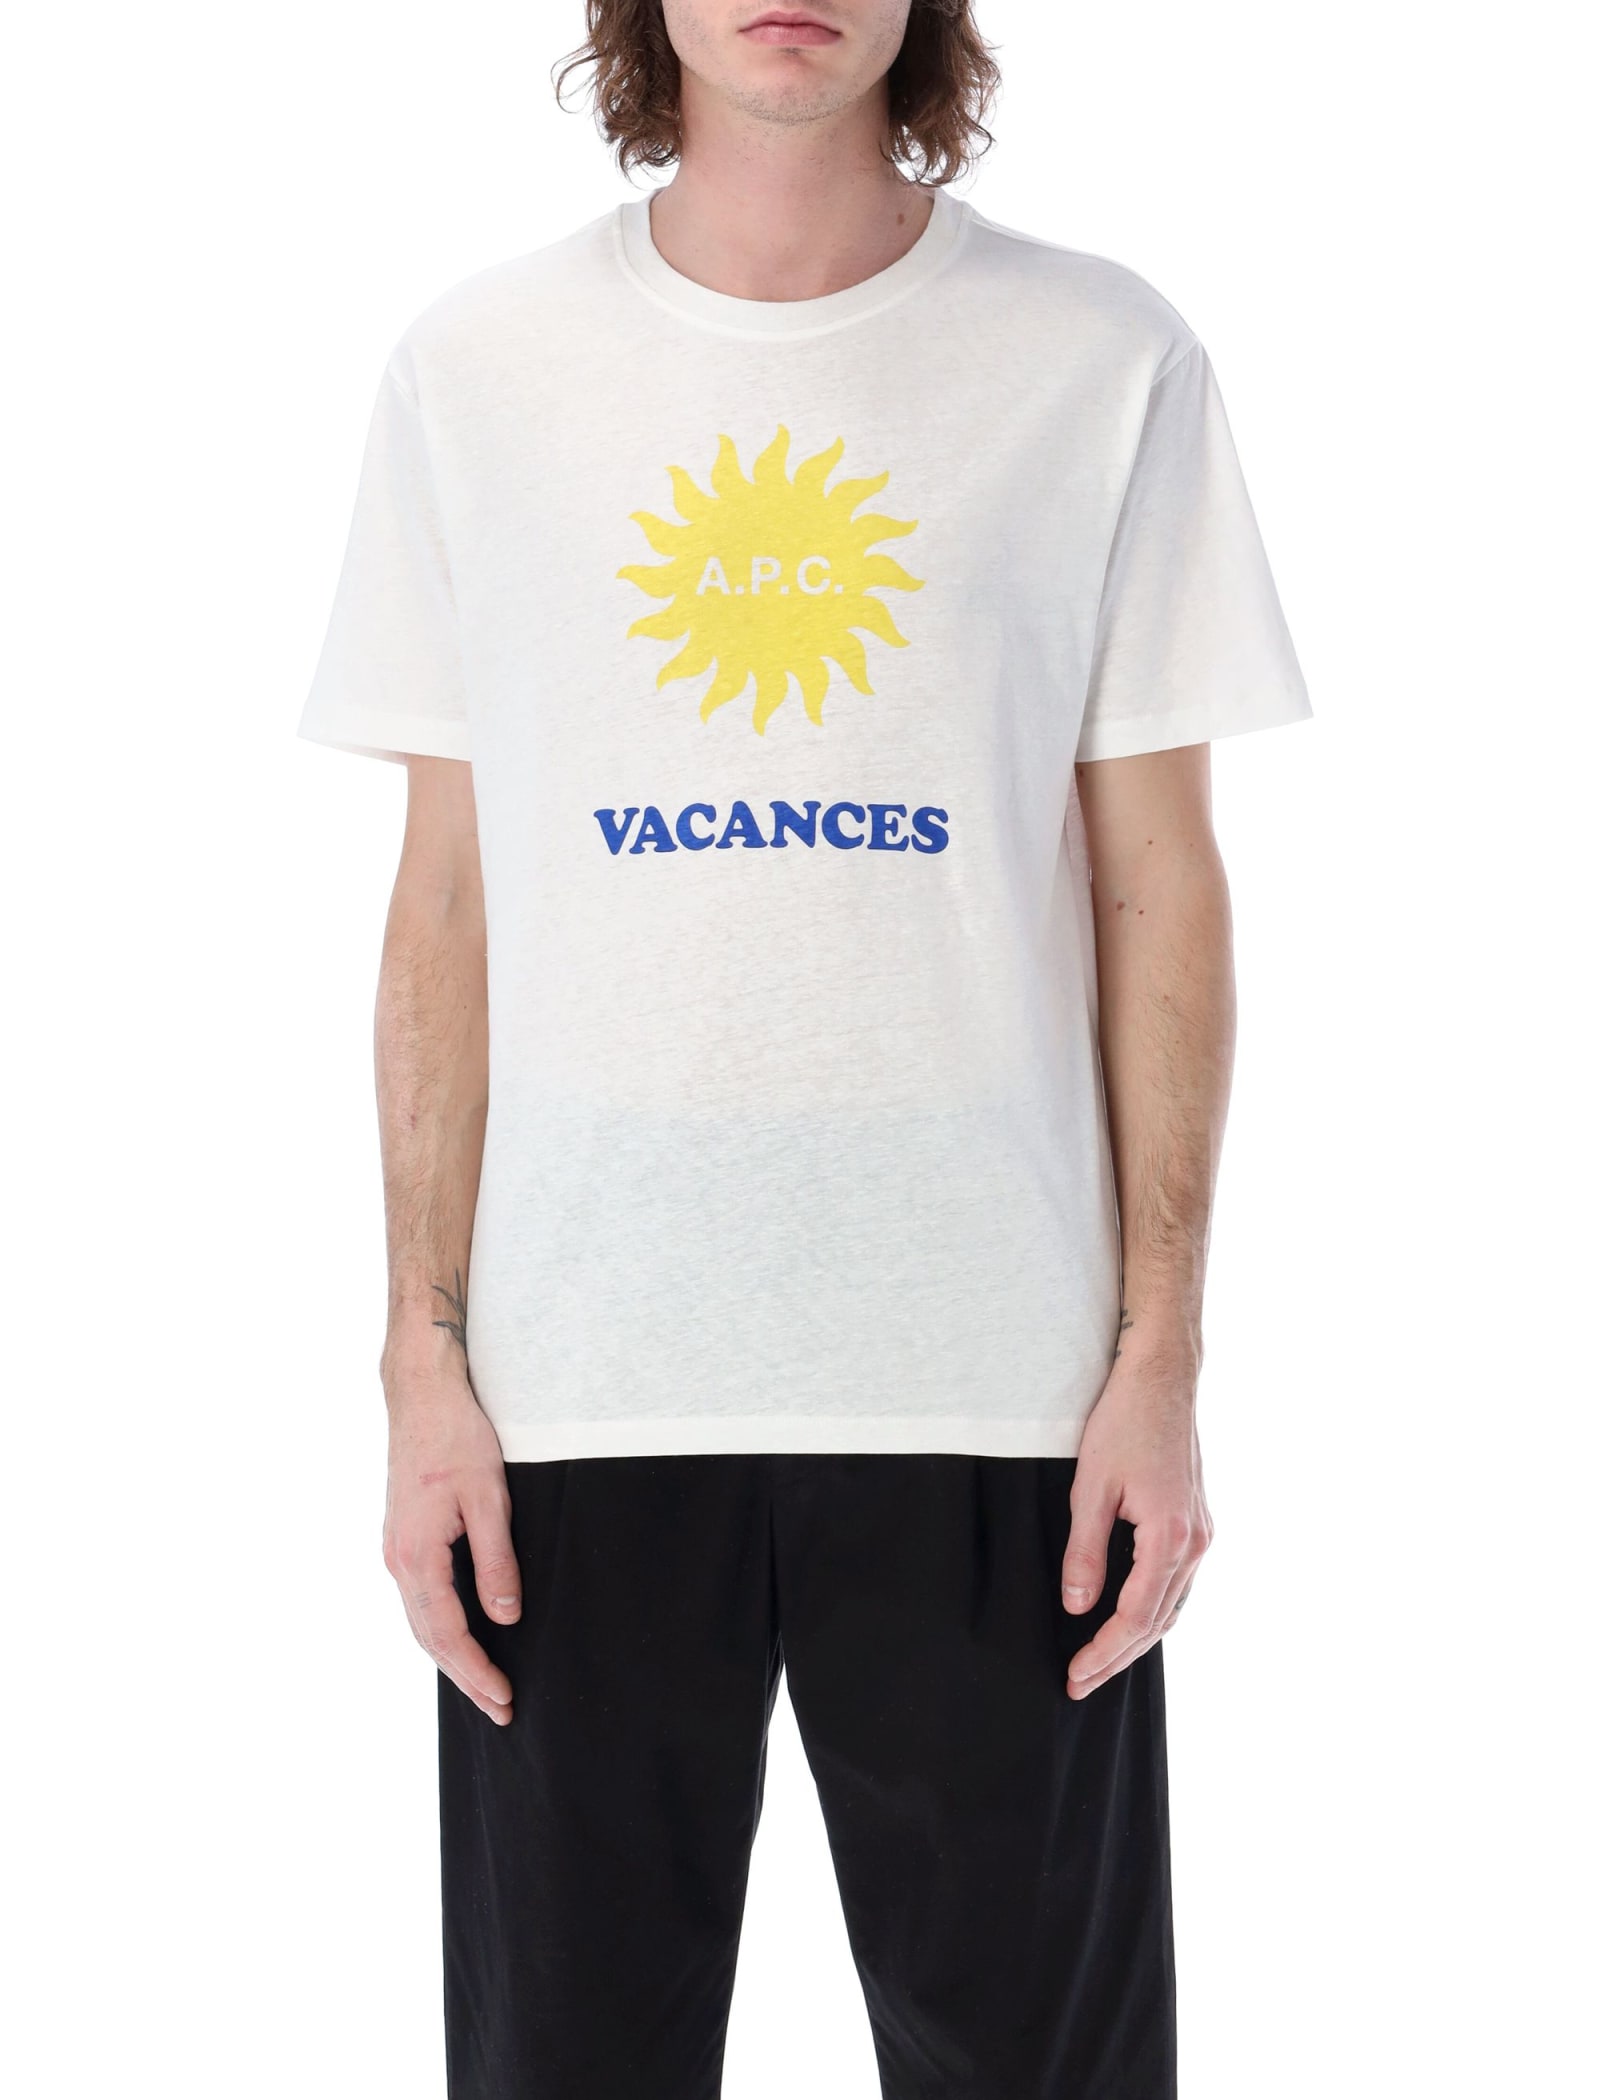 A.P.C. Vacances T-shirt